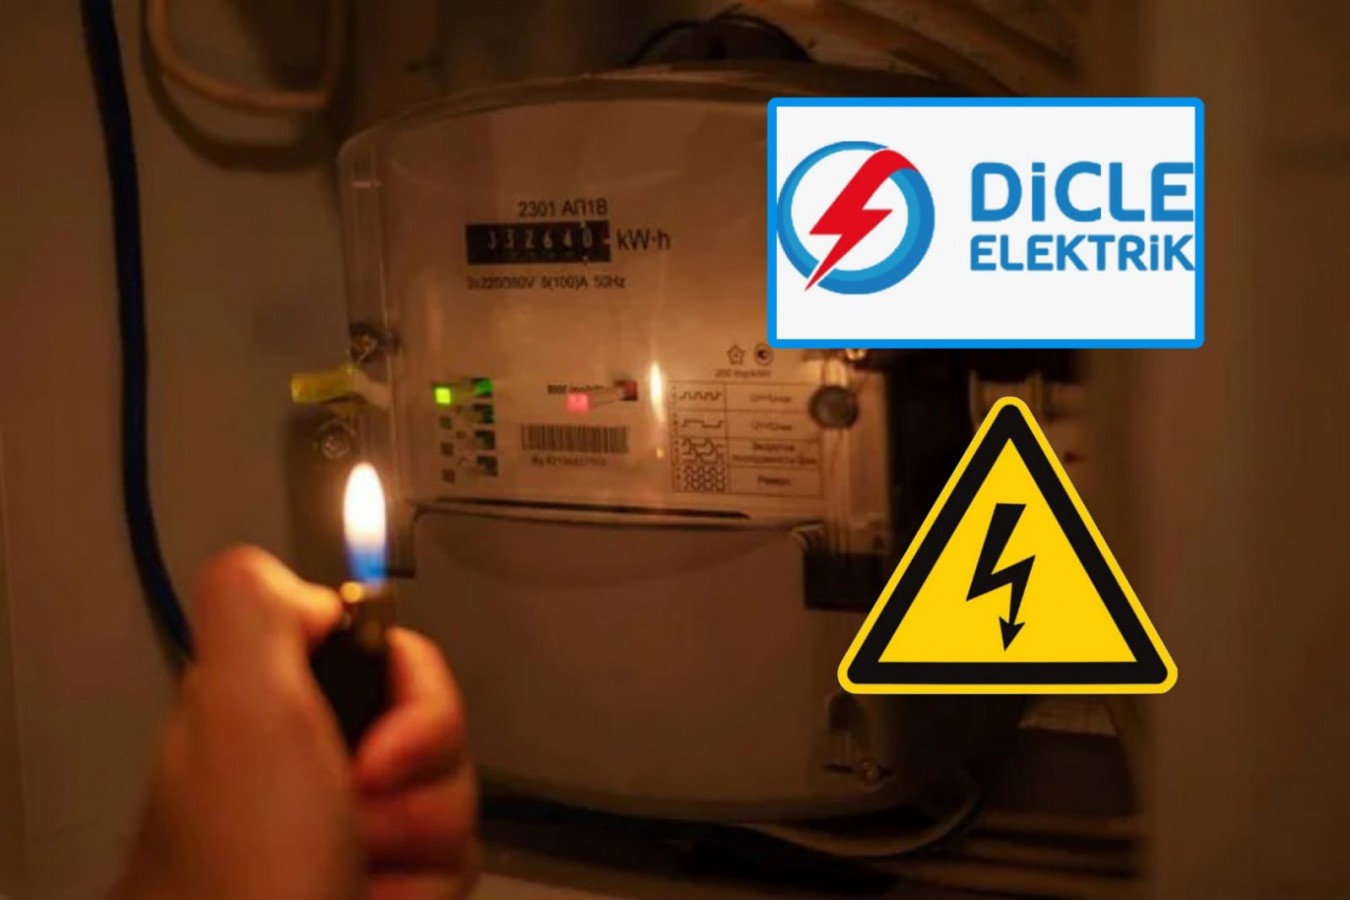 DEDAŞ'ın bildirimsiz elektrik kesintisi vatandaşı mağdur etti